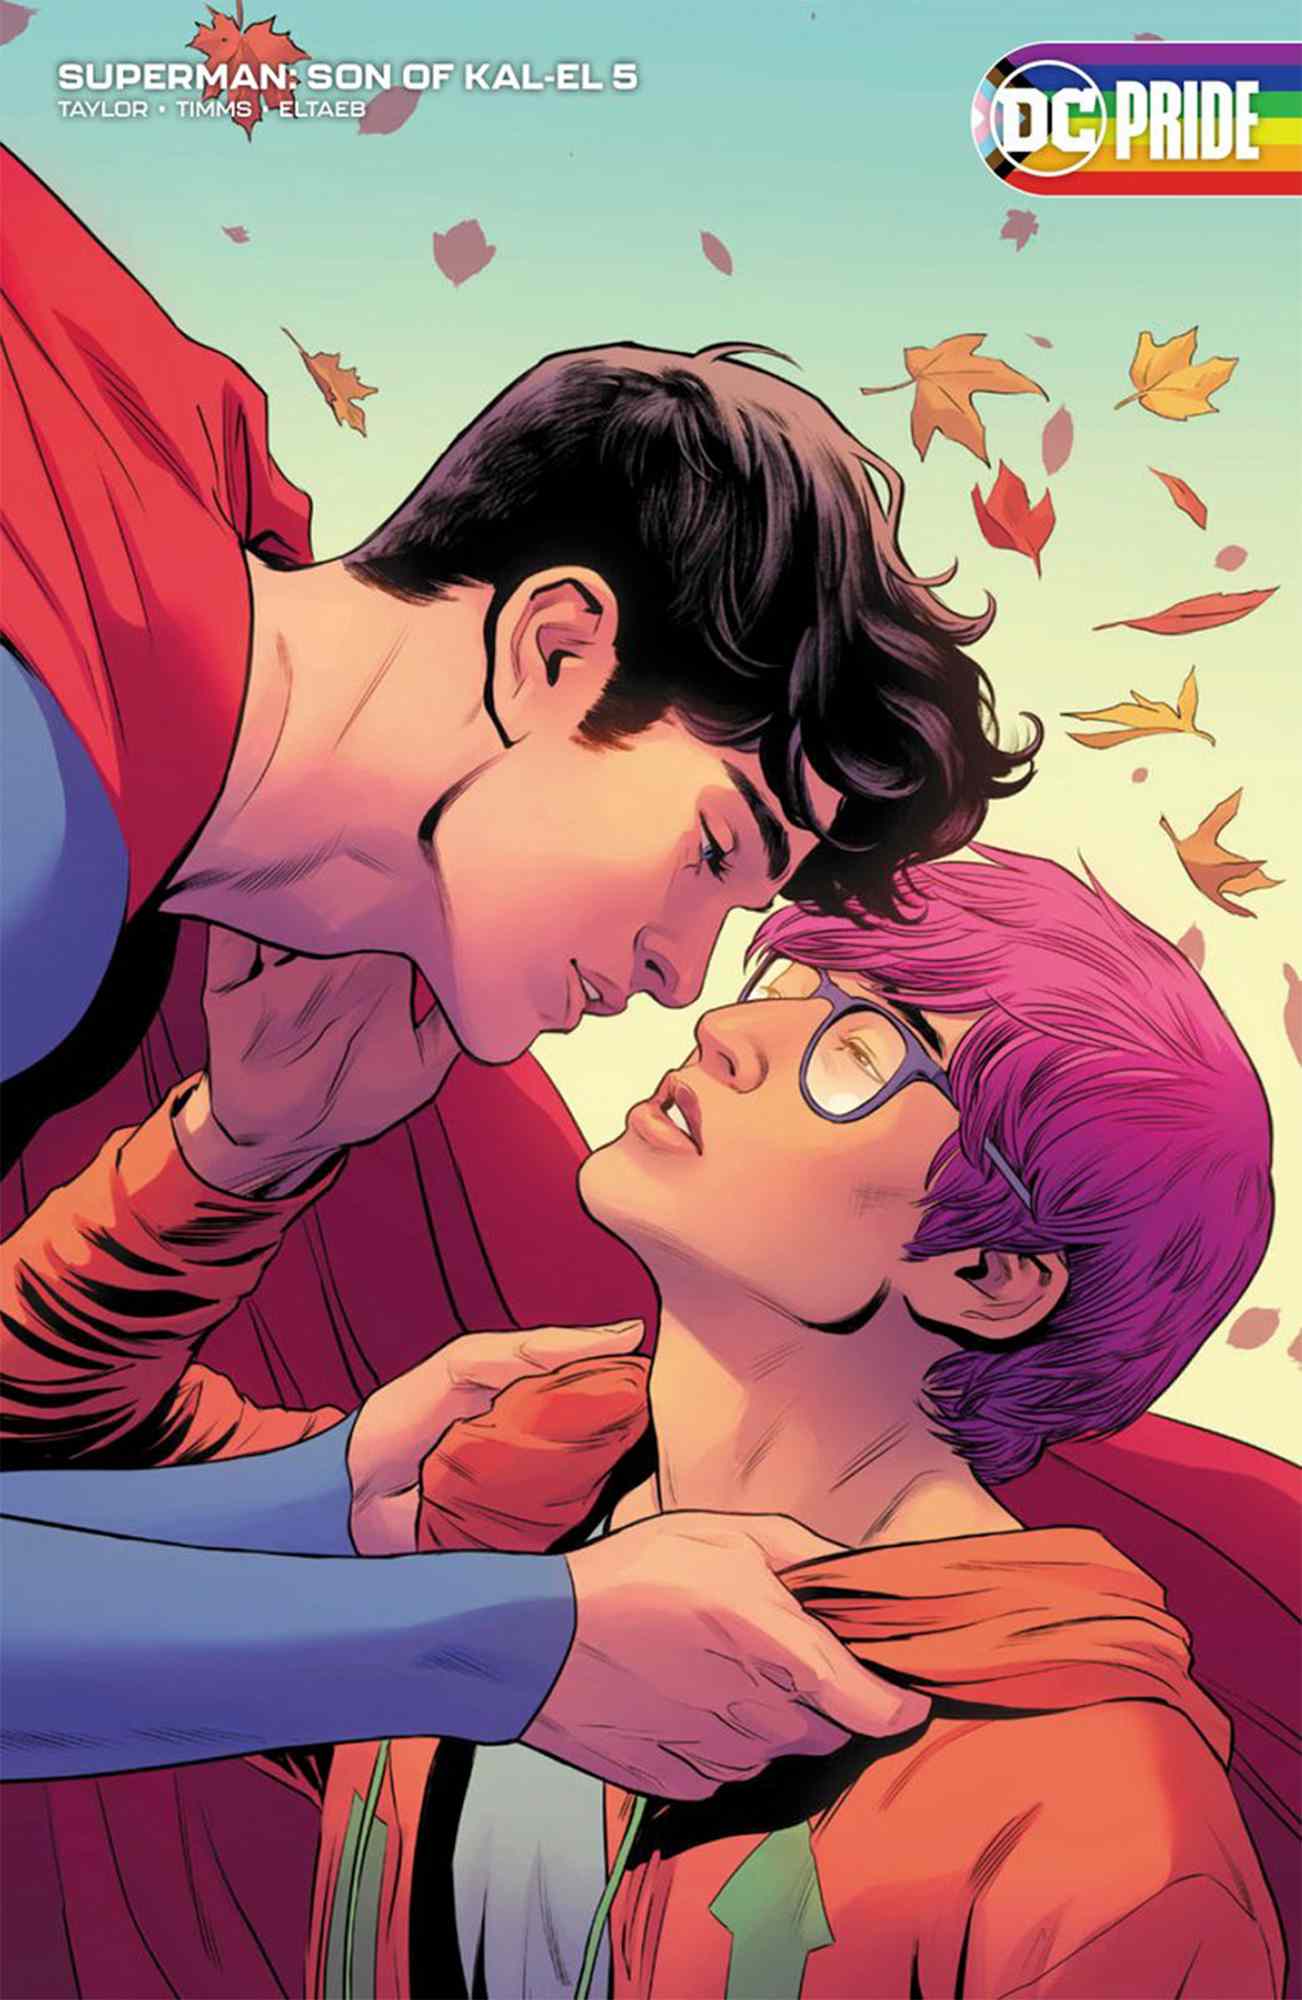 Superman si rivela bisessuale nel nuovo fumetto: "Tutti meritano di vedere se stessi" in Heroes